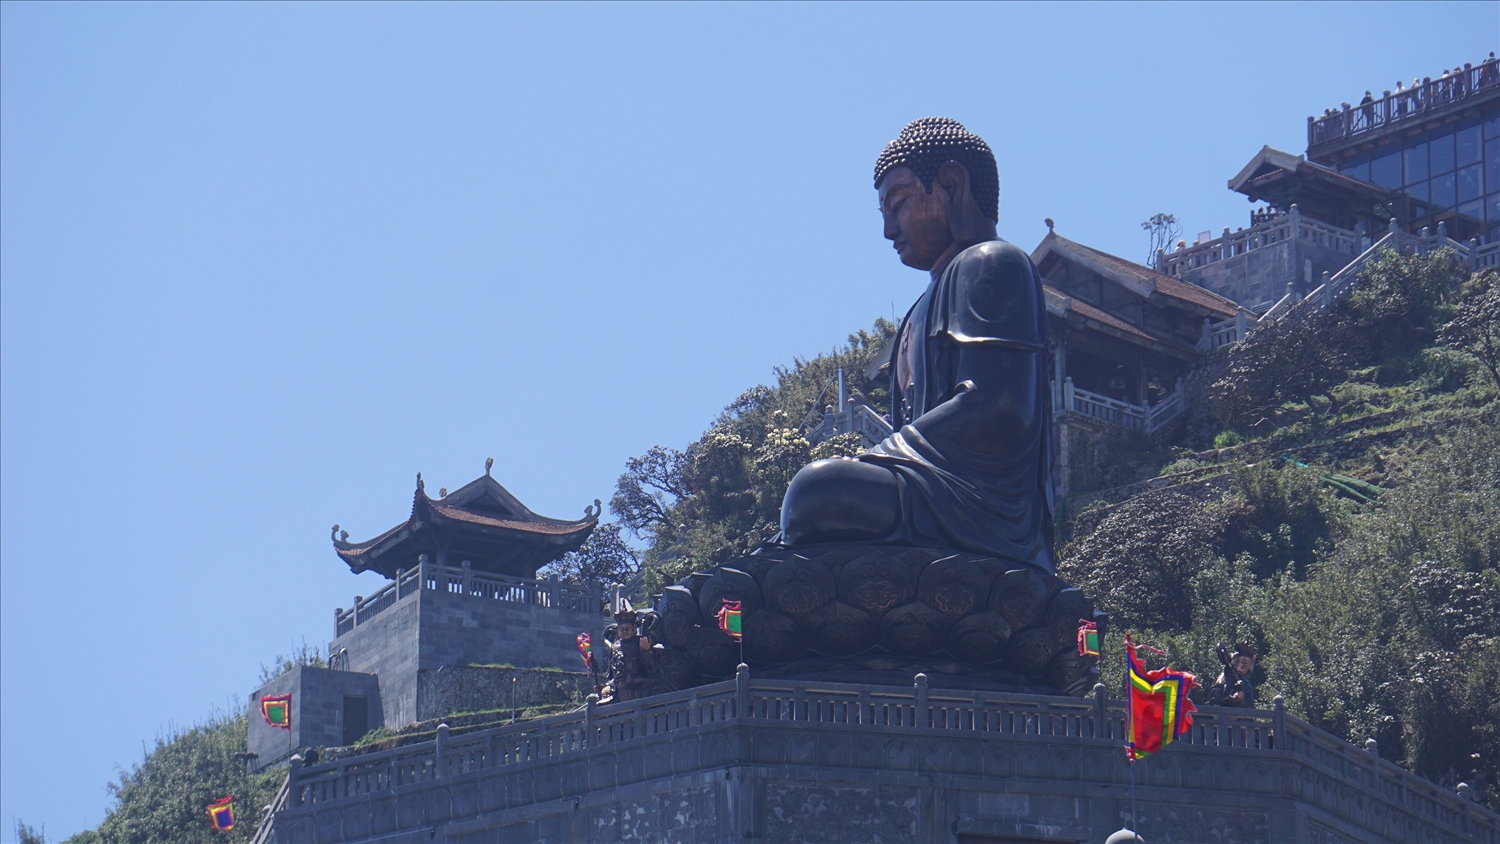 Du lịch tâm linh trên đỉnh Phan xi păng là một trong những điểm đến thu hút du khách trong thời gian qua